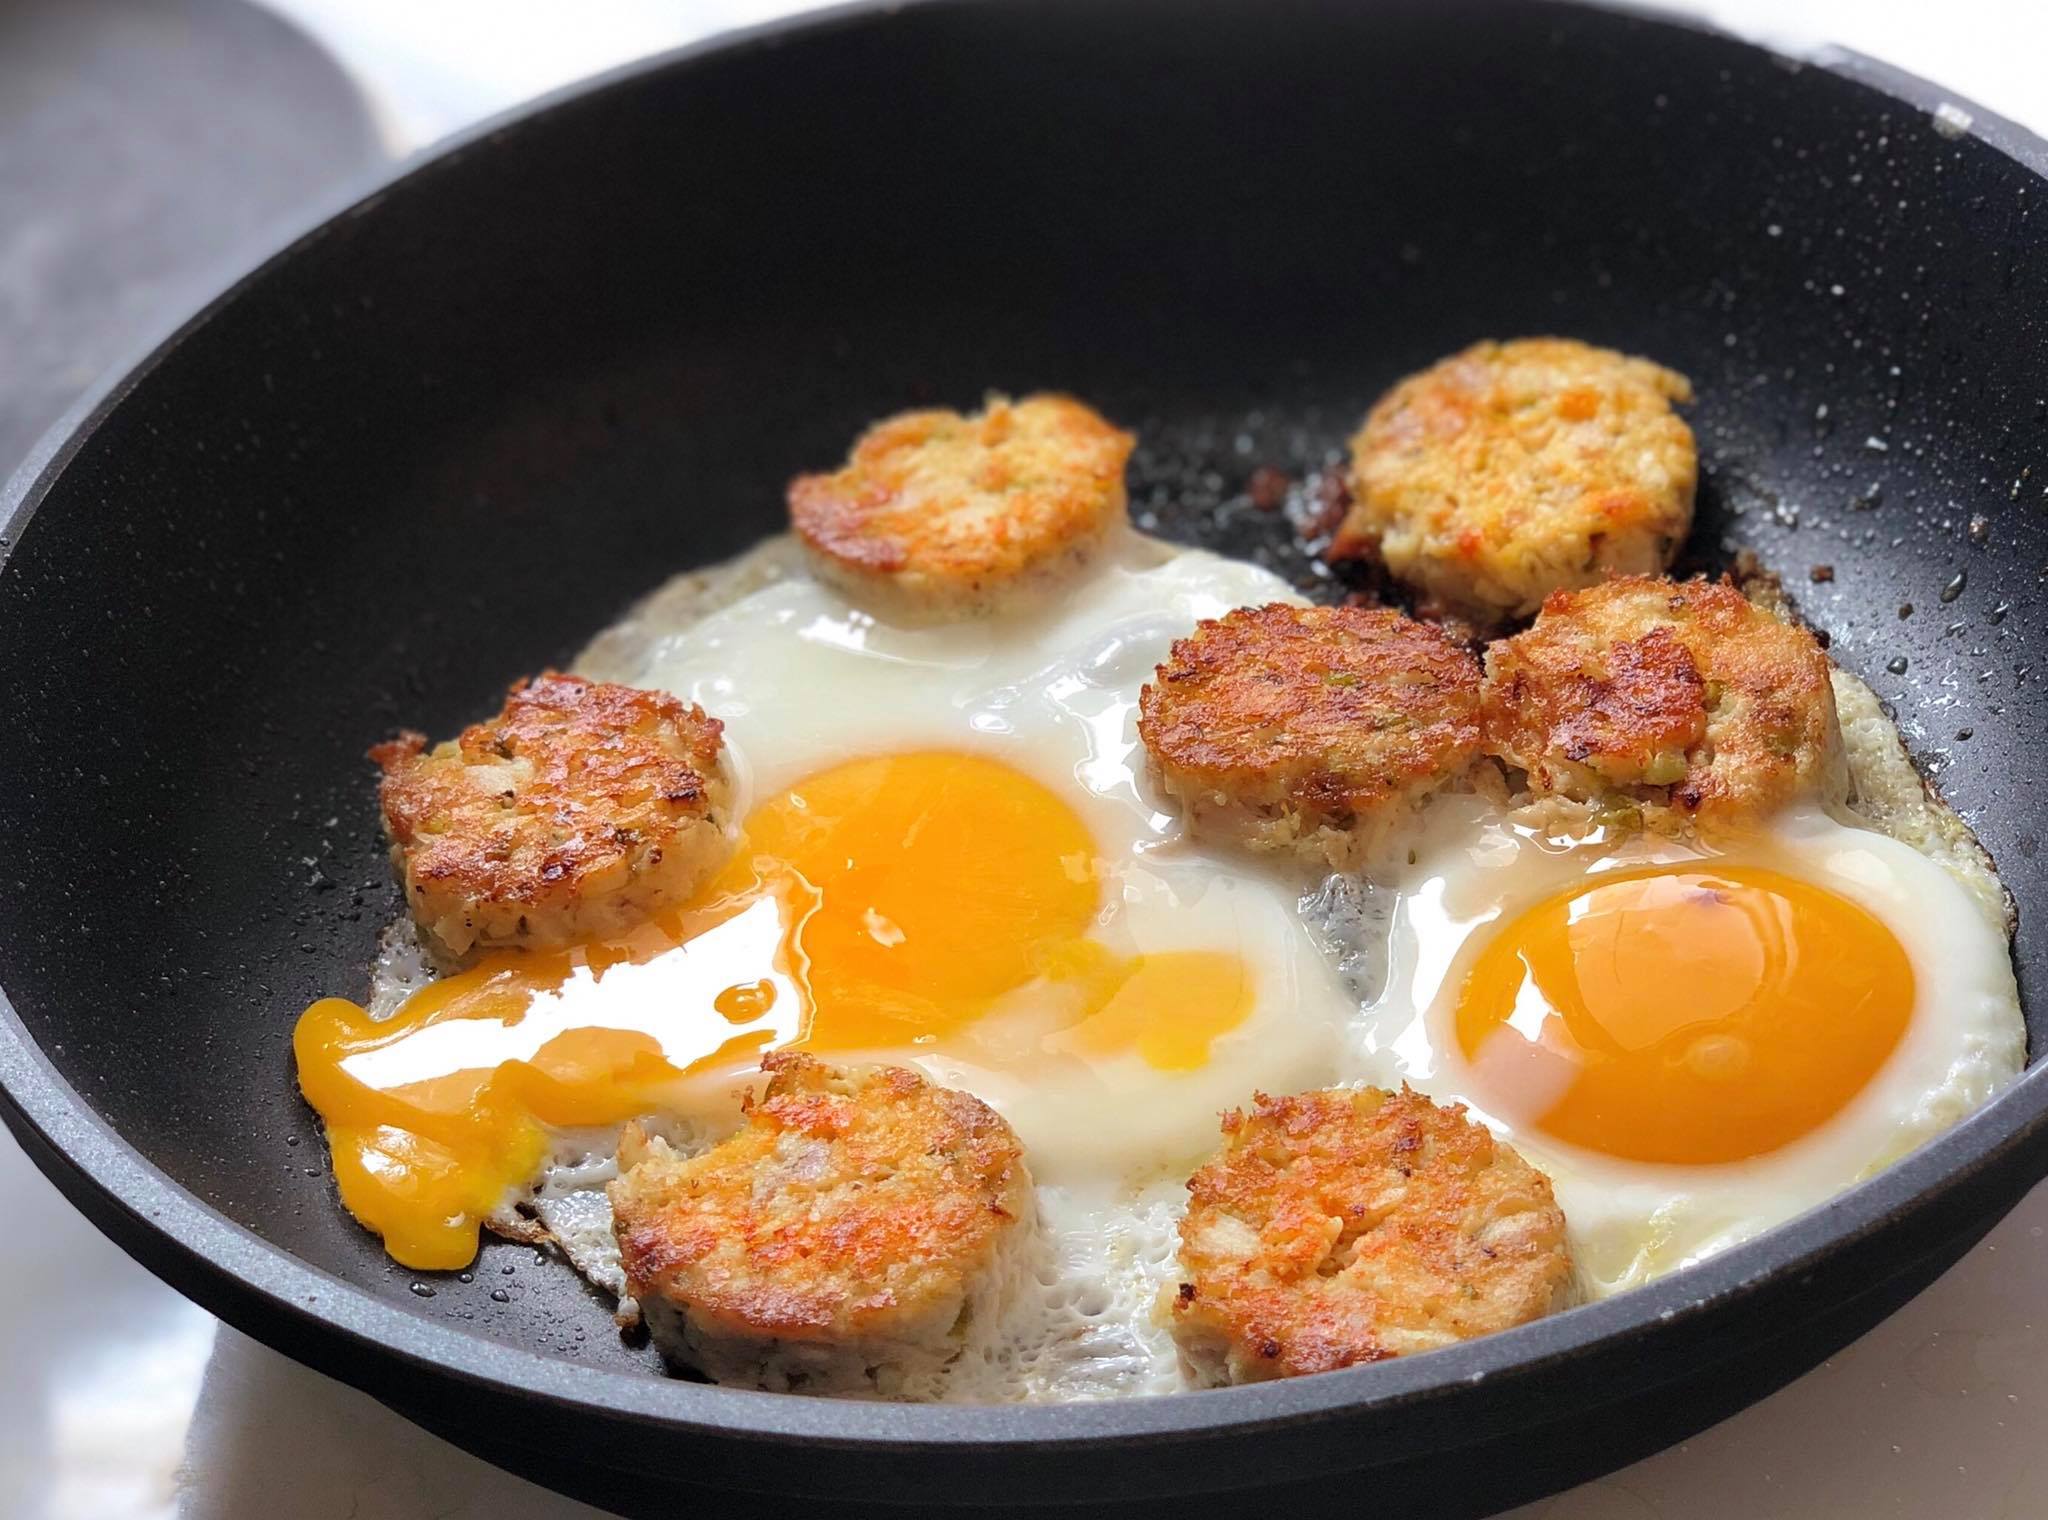 Συνταγή: Καβουρμάς από κοτόπουλο με αβγά, από τον Σεφ Δημήτρη Τζιοβάρα